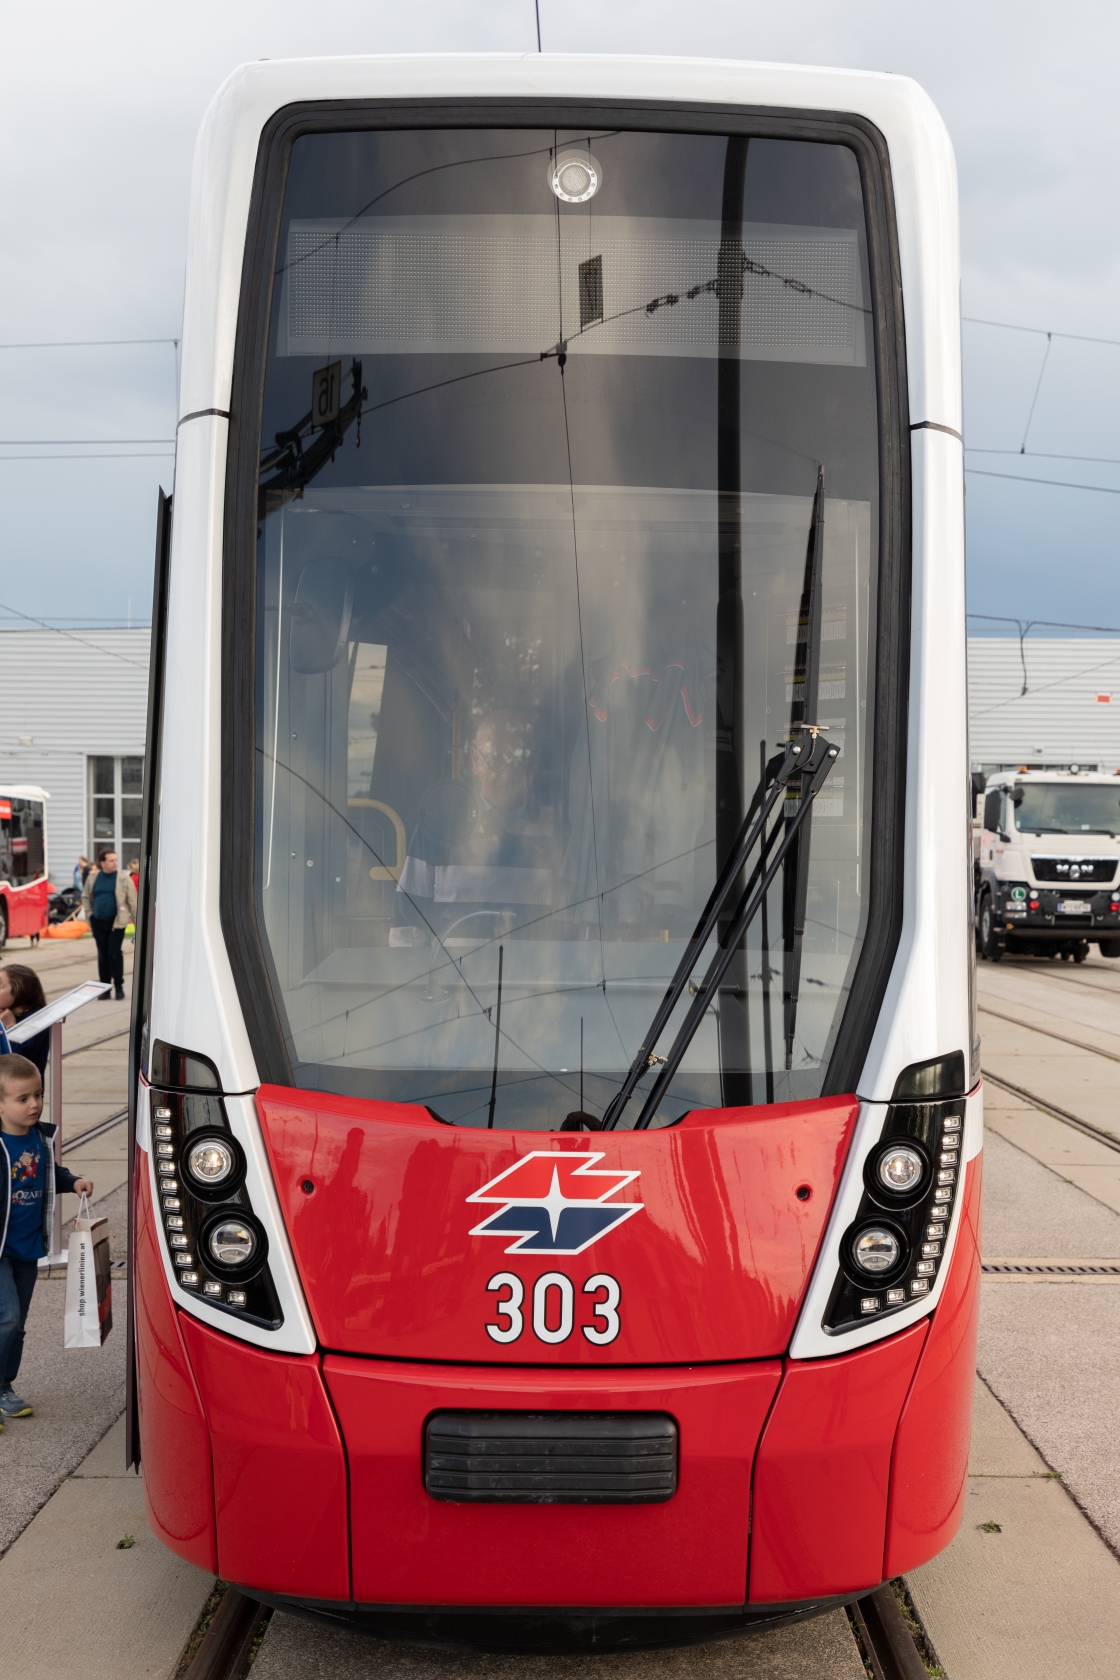 Tramwaytag 2019 - 70 Jahre Wiener Stadtwerke